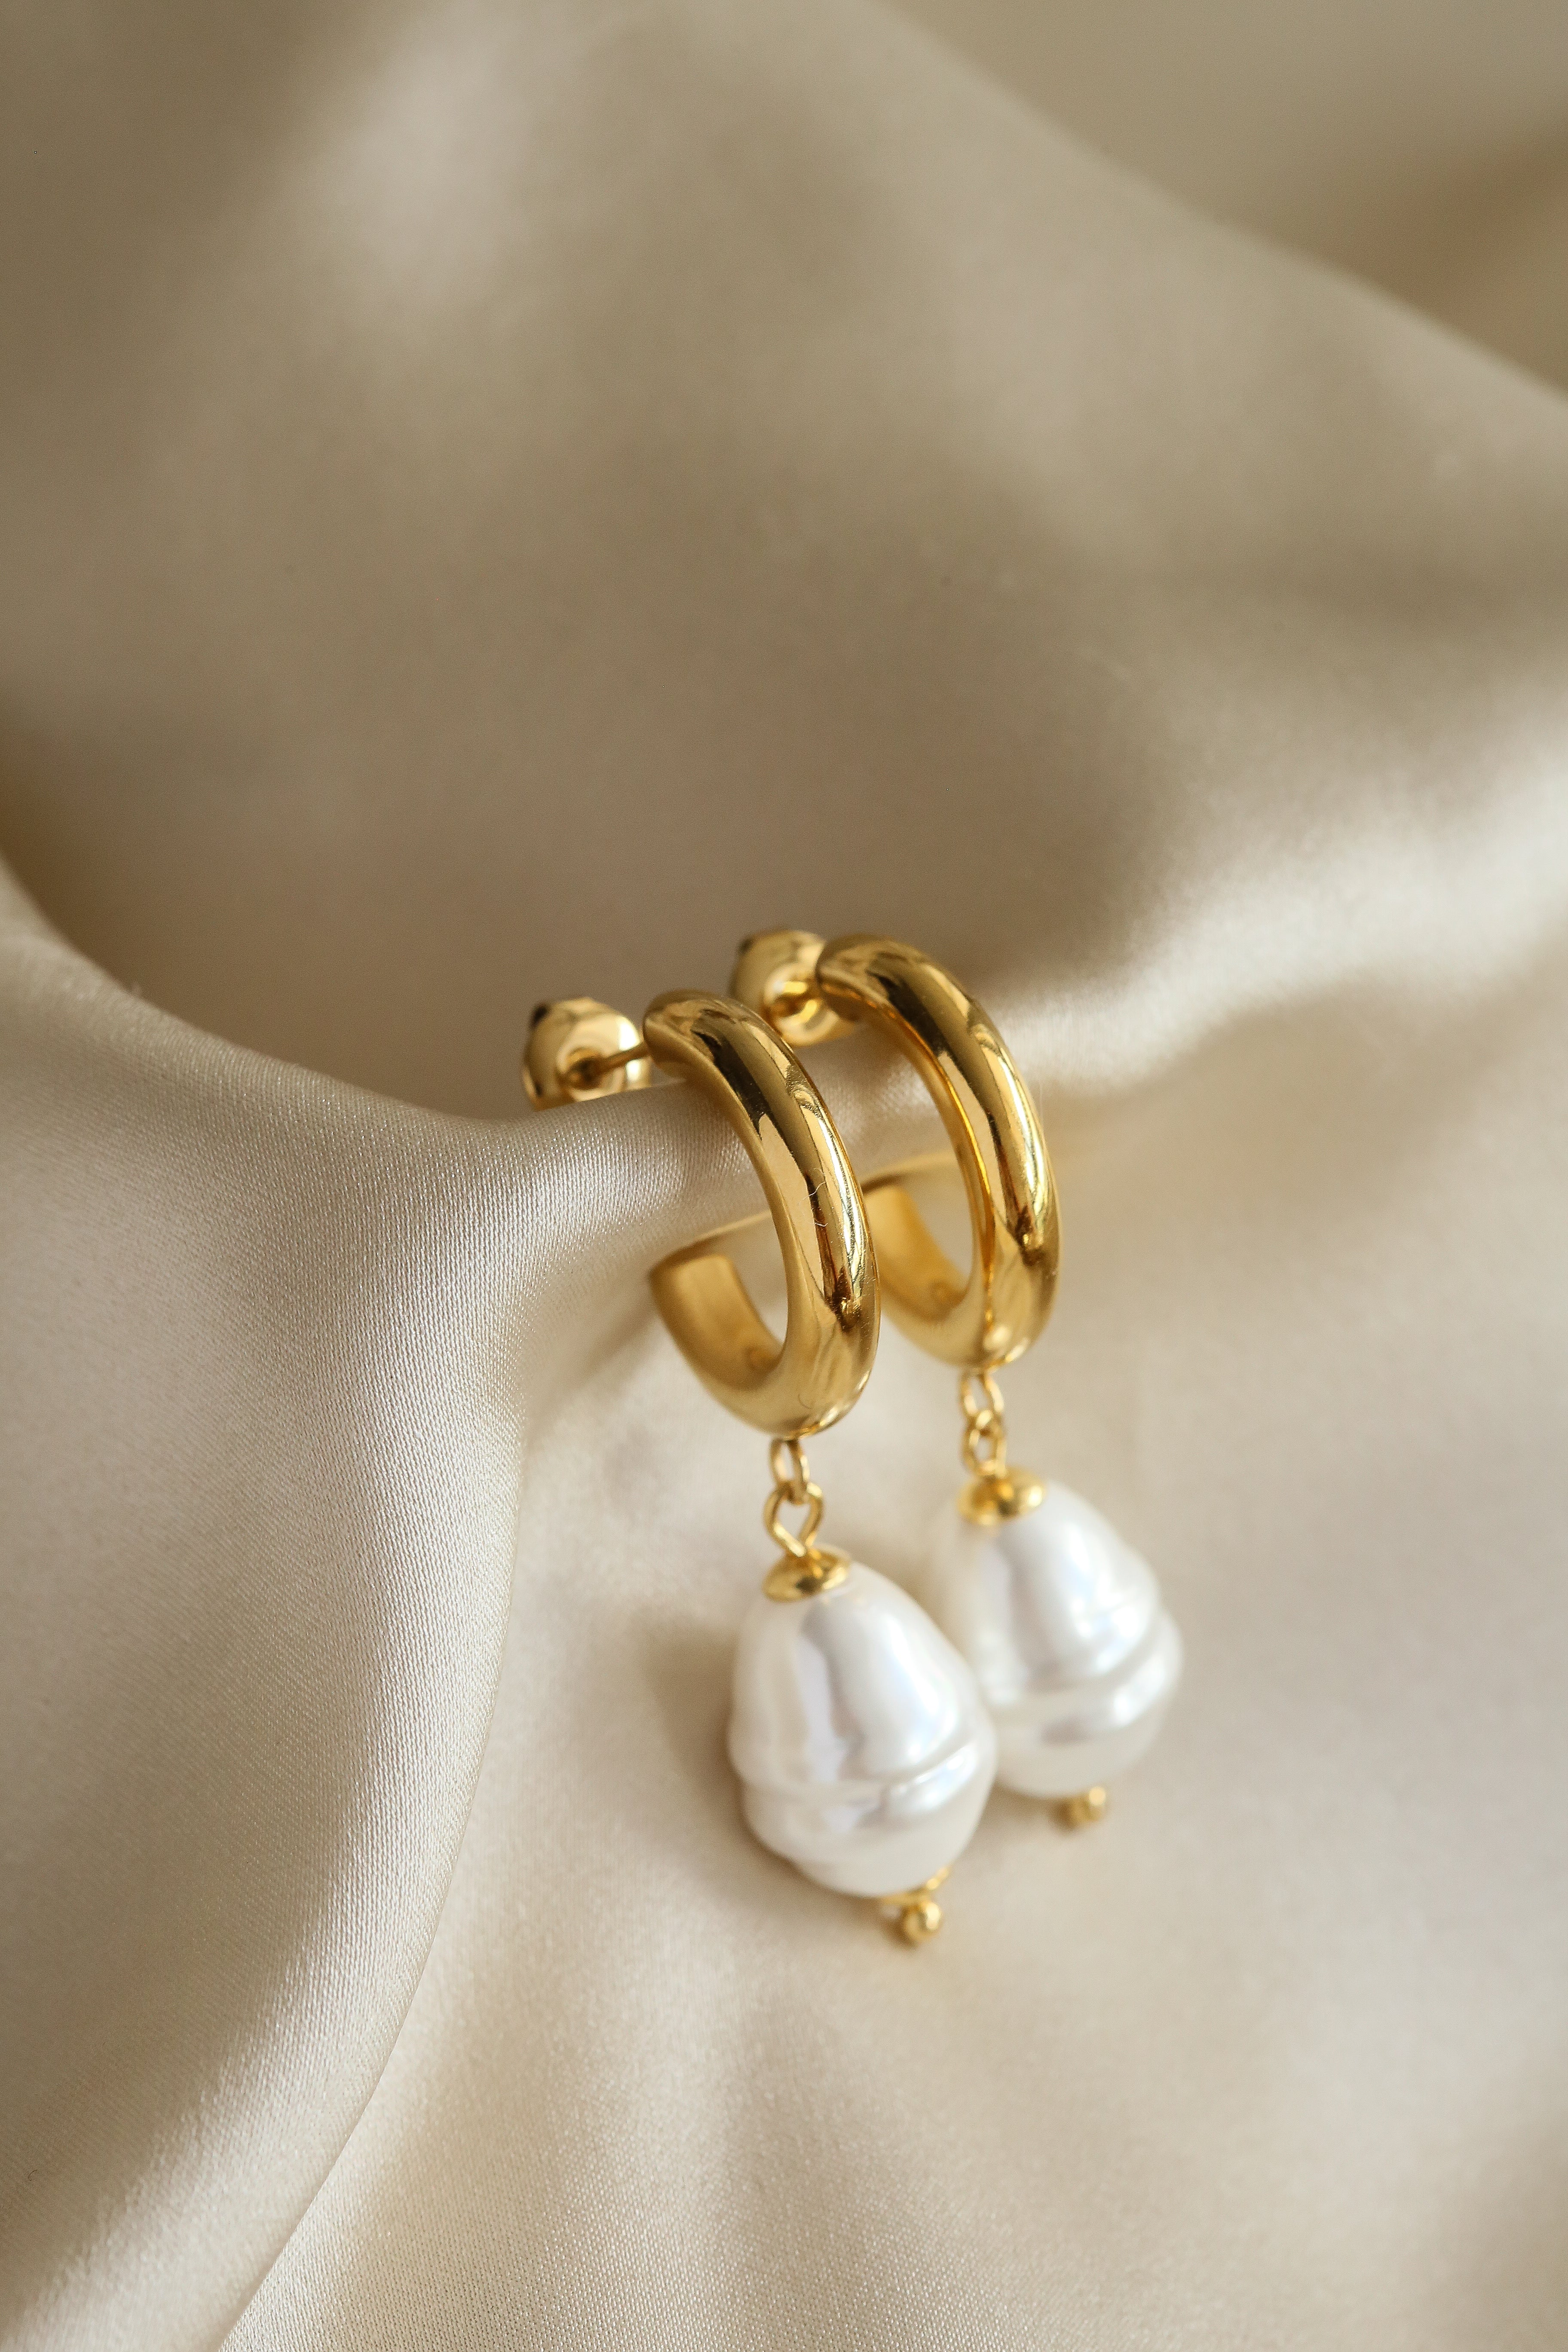 Iza Hoop Earrings - Boutique Minimaliste has waterproof, durable, elegant and vintage inspired jewelry